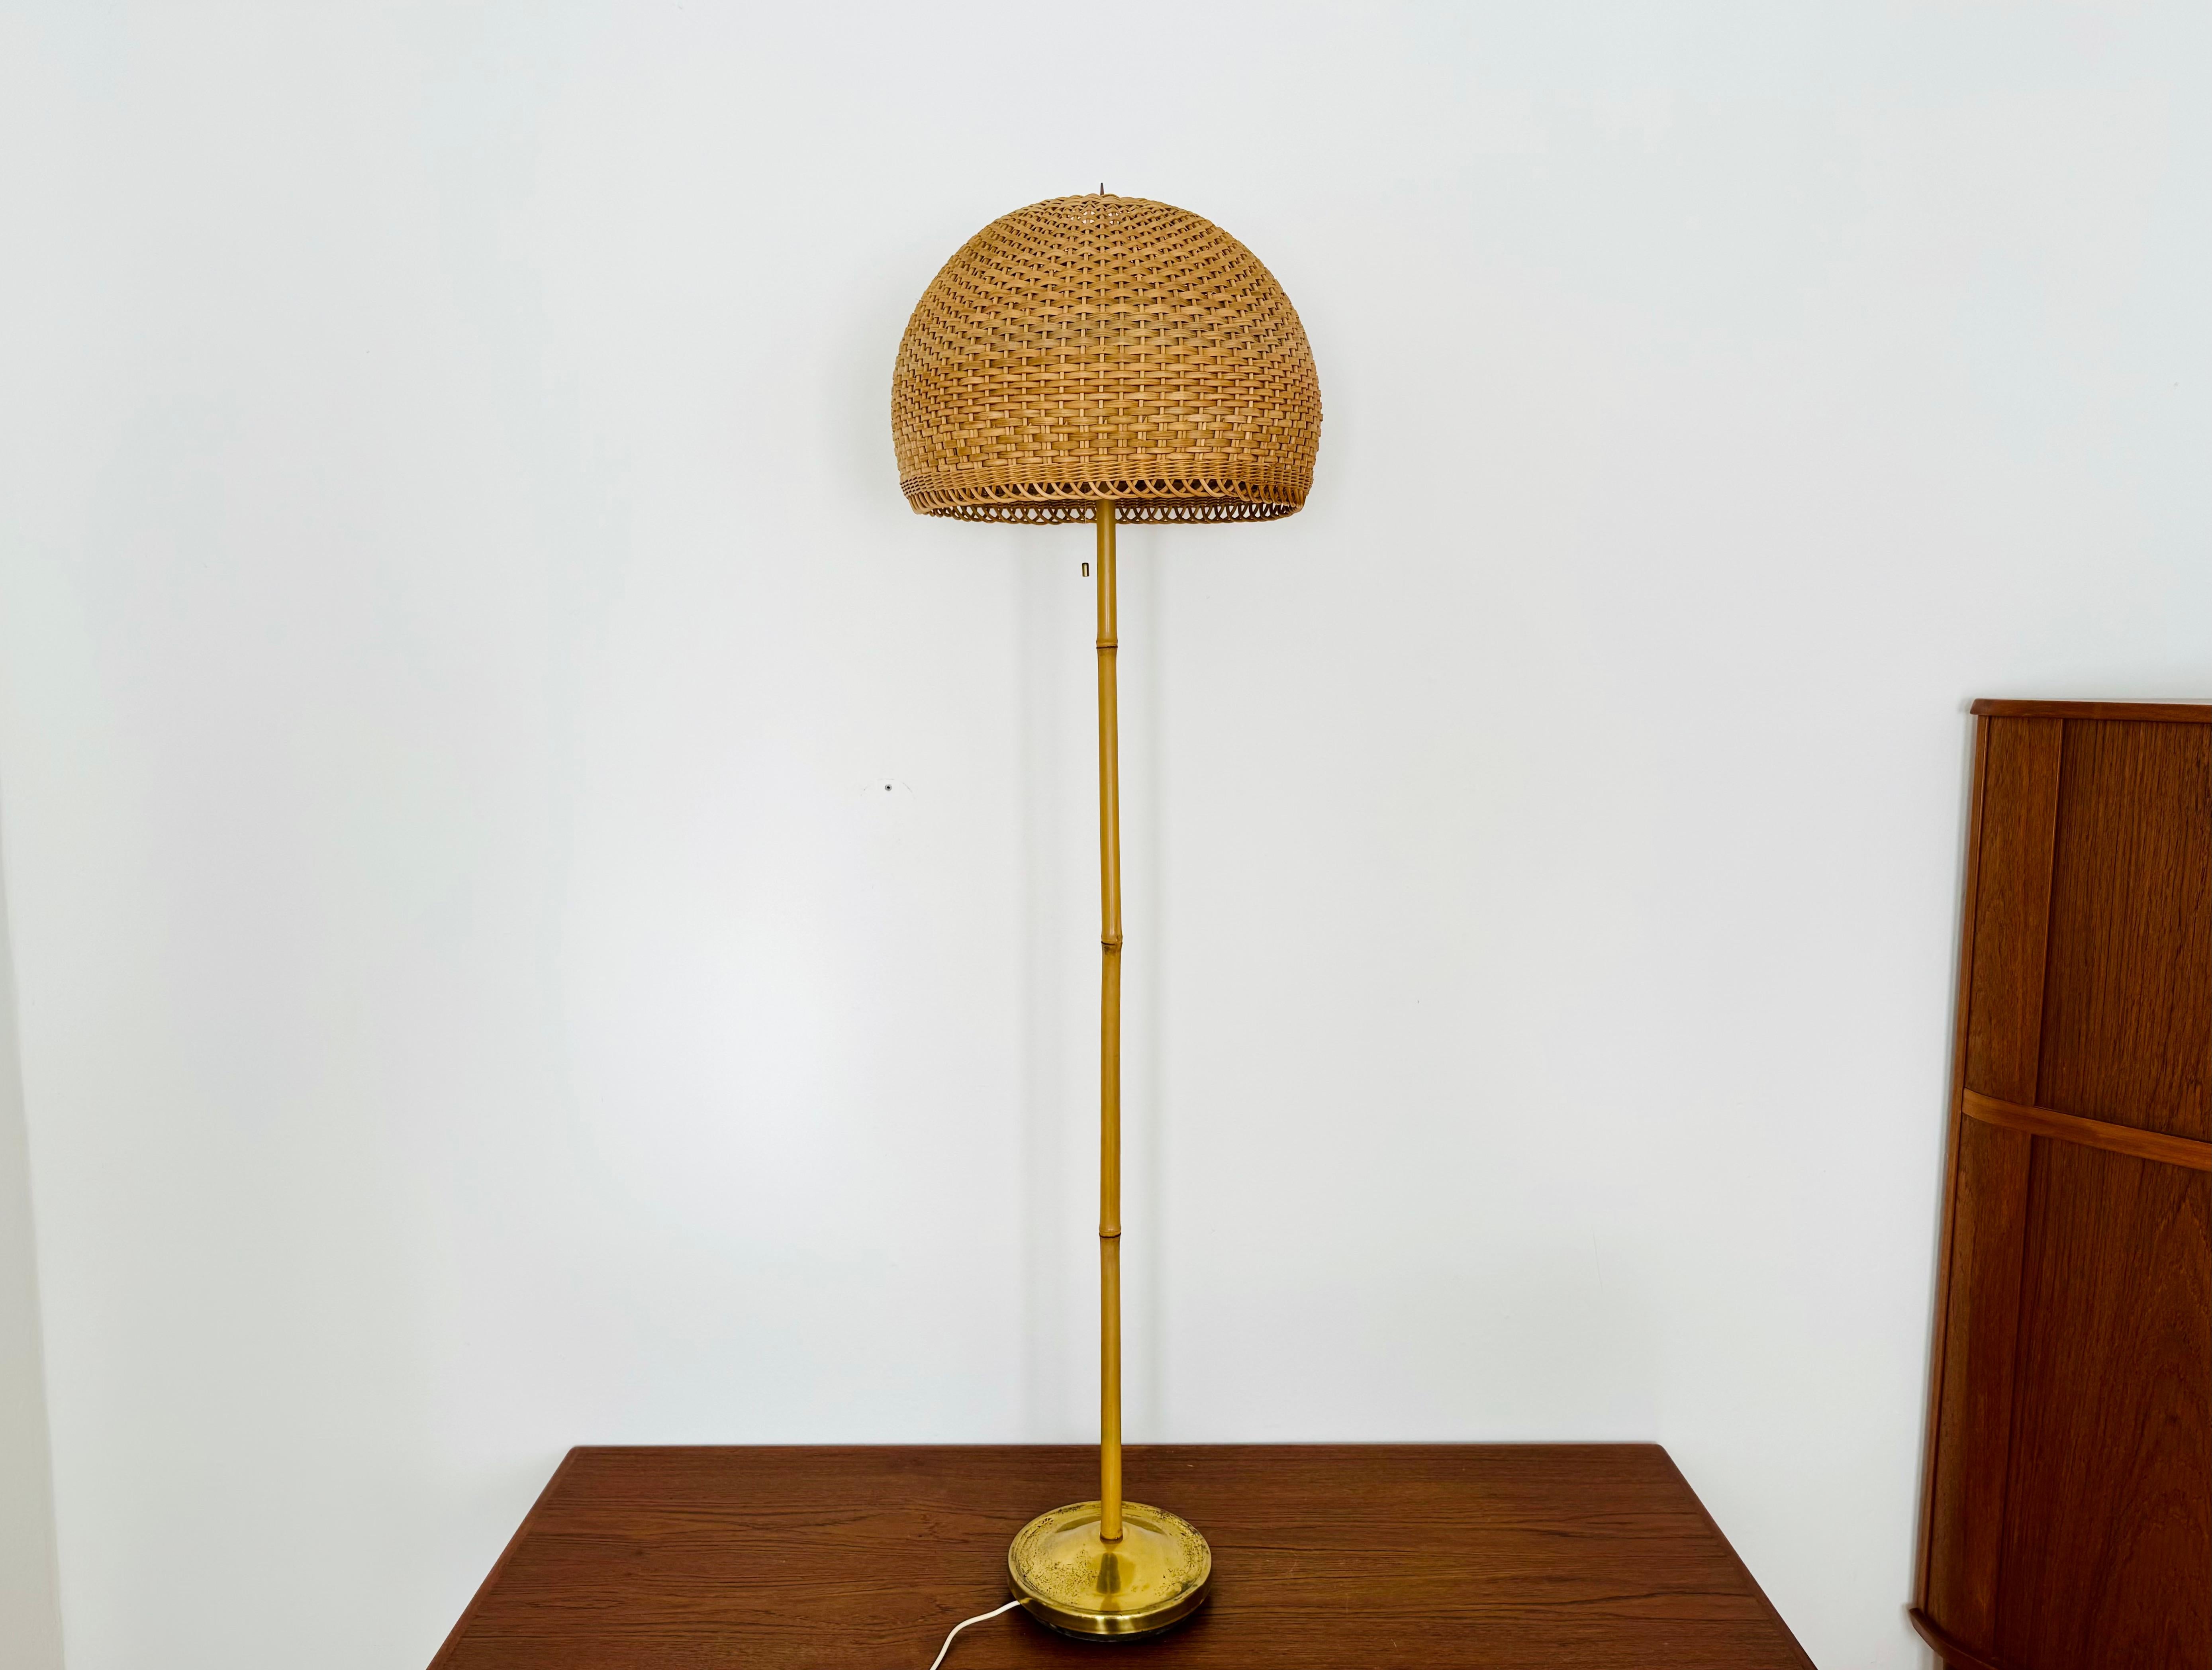 Très beau lampadaire en rotin avec tige en bambou des années 1950.
Un design exceptionnel et une fabrication de haute qualité.
Les détails soignés et l'effet lumineux très agréable font de cette lampe un objet spécial et un véritable coup de